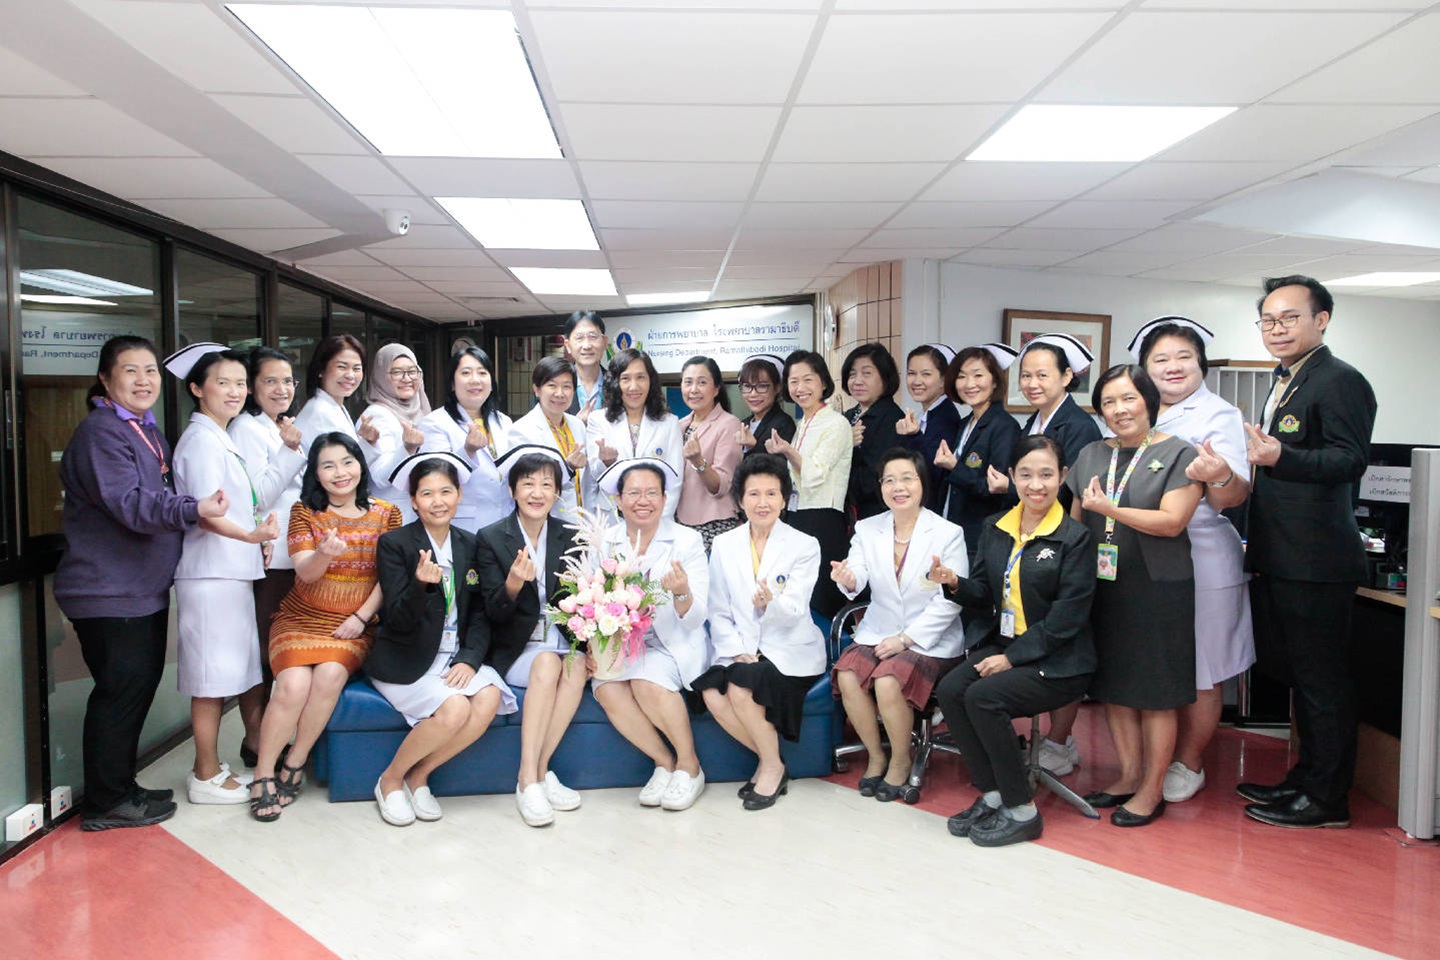 คณะแพทยศาสตร์โรงพยาบาลรามาธิบดี ร่วมงานประชุมวิชาการนานาชาติ Princess Chulabhorn International Oncology Conference 2019